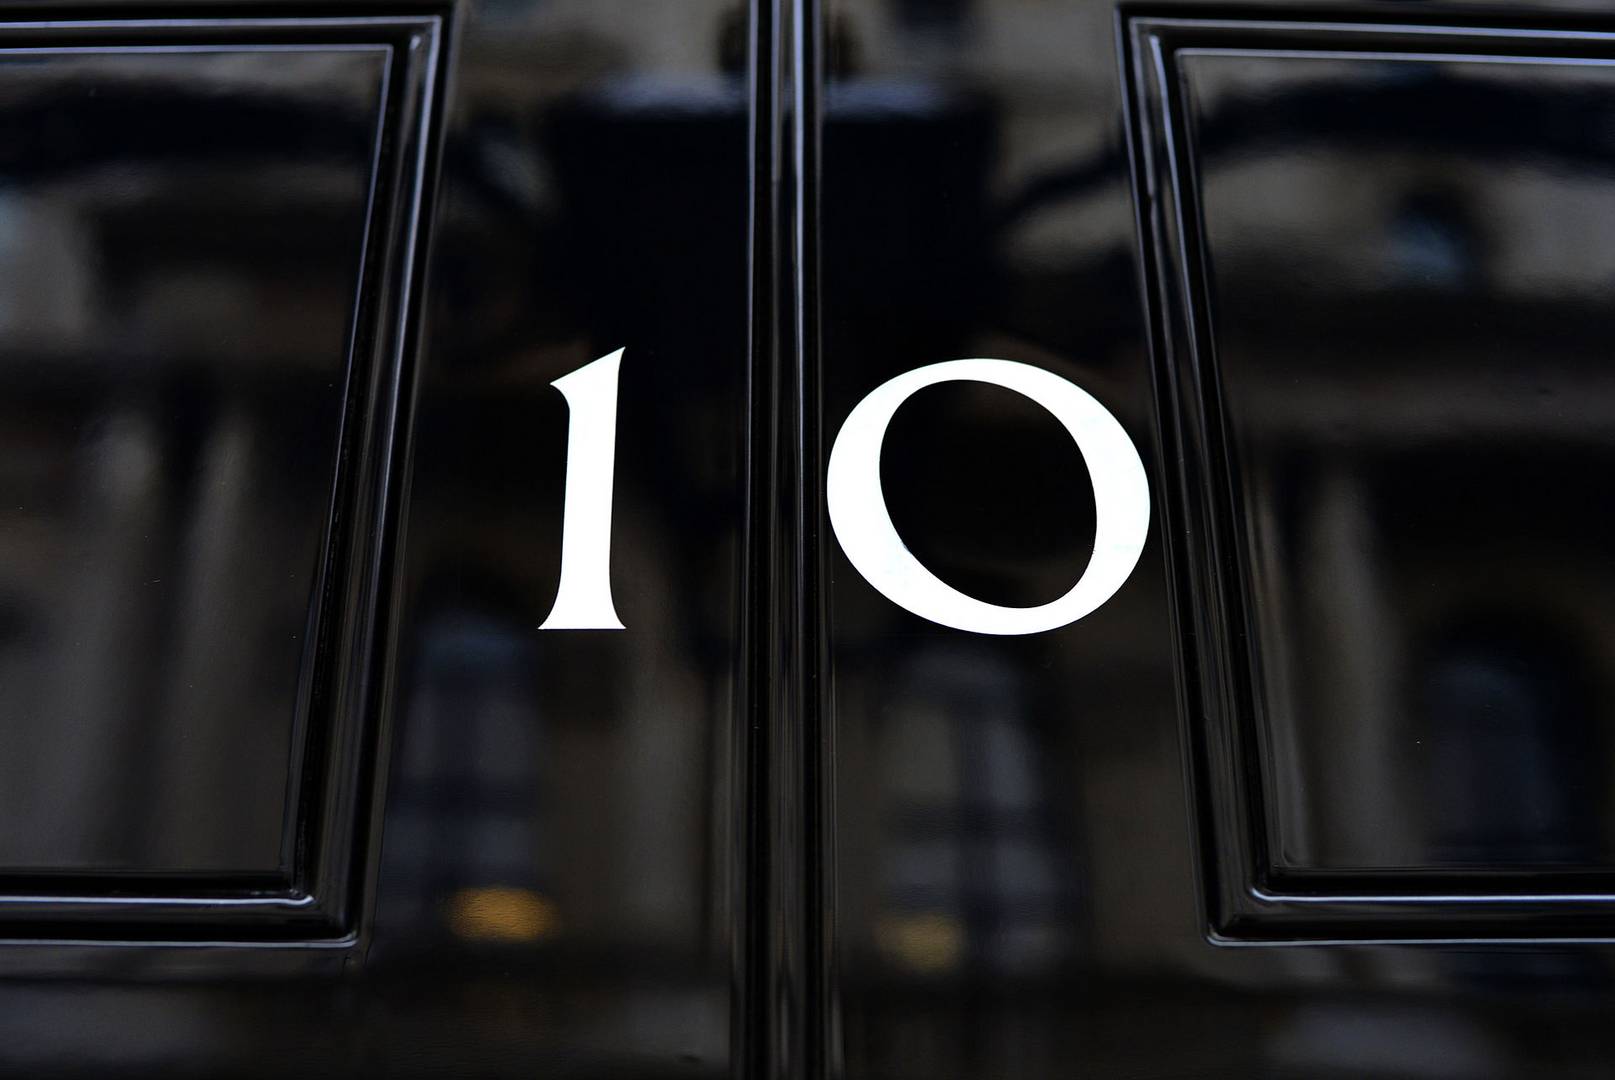 Входная дверь официальной резиденции премьер-министра Великобритании на Даунинг-стрит в Лондоне